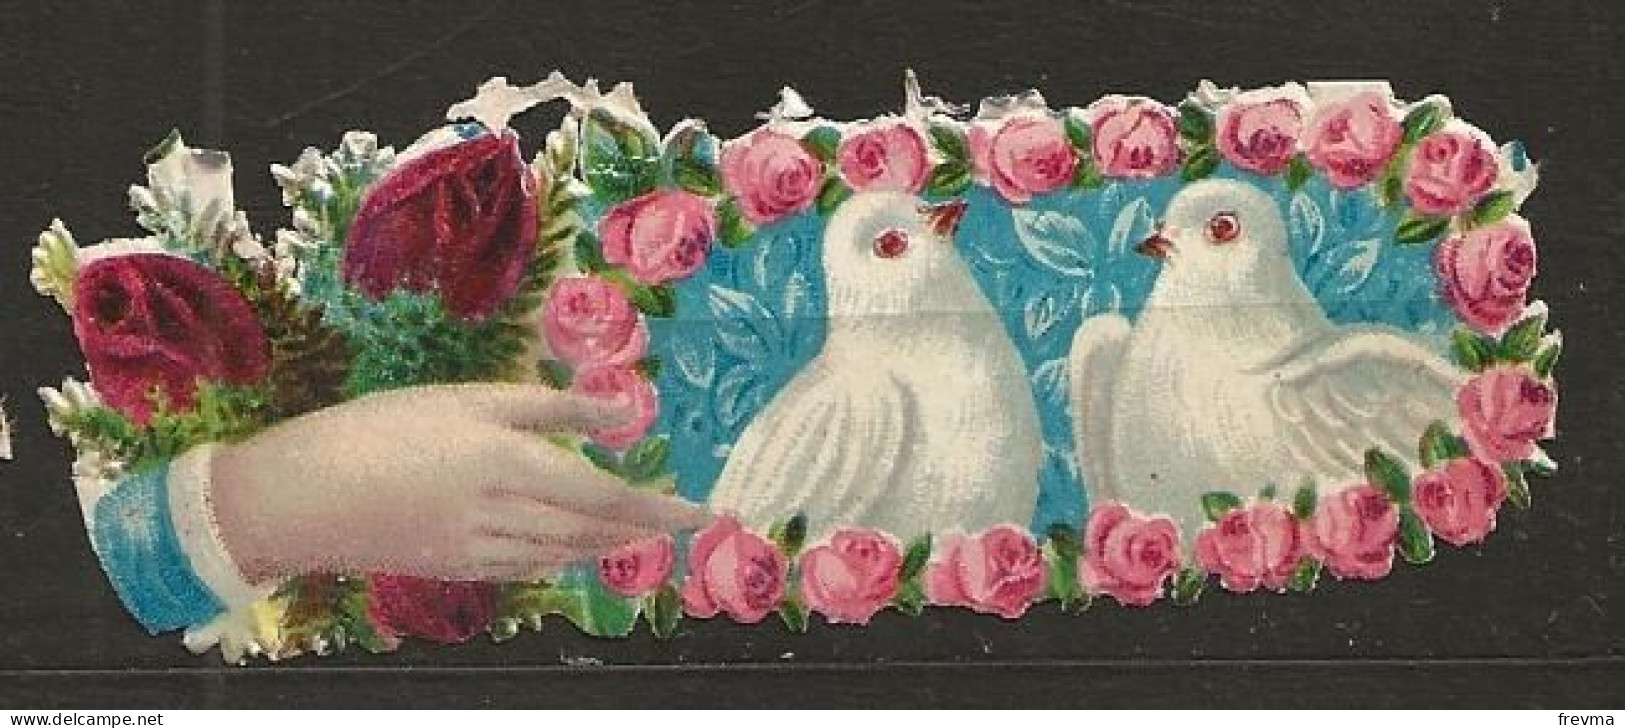 Découpis Gaufrée Colombe Entourées De Fleurs Année 1900 - Fiori